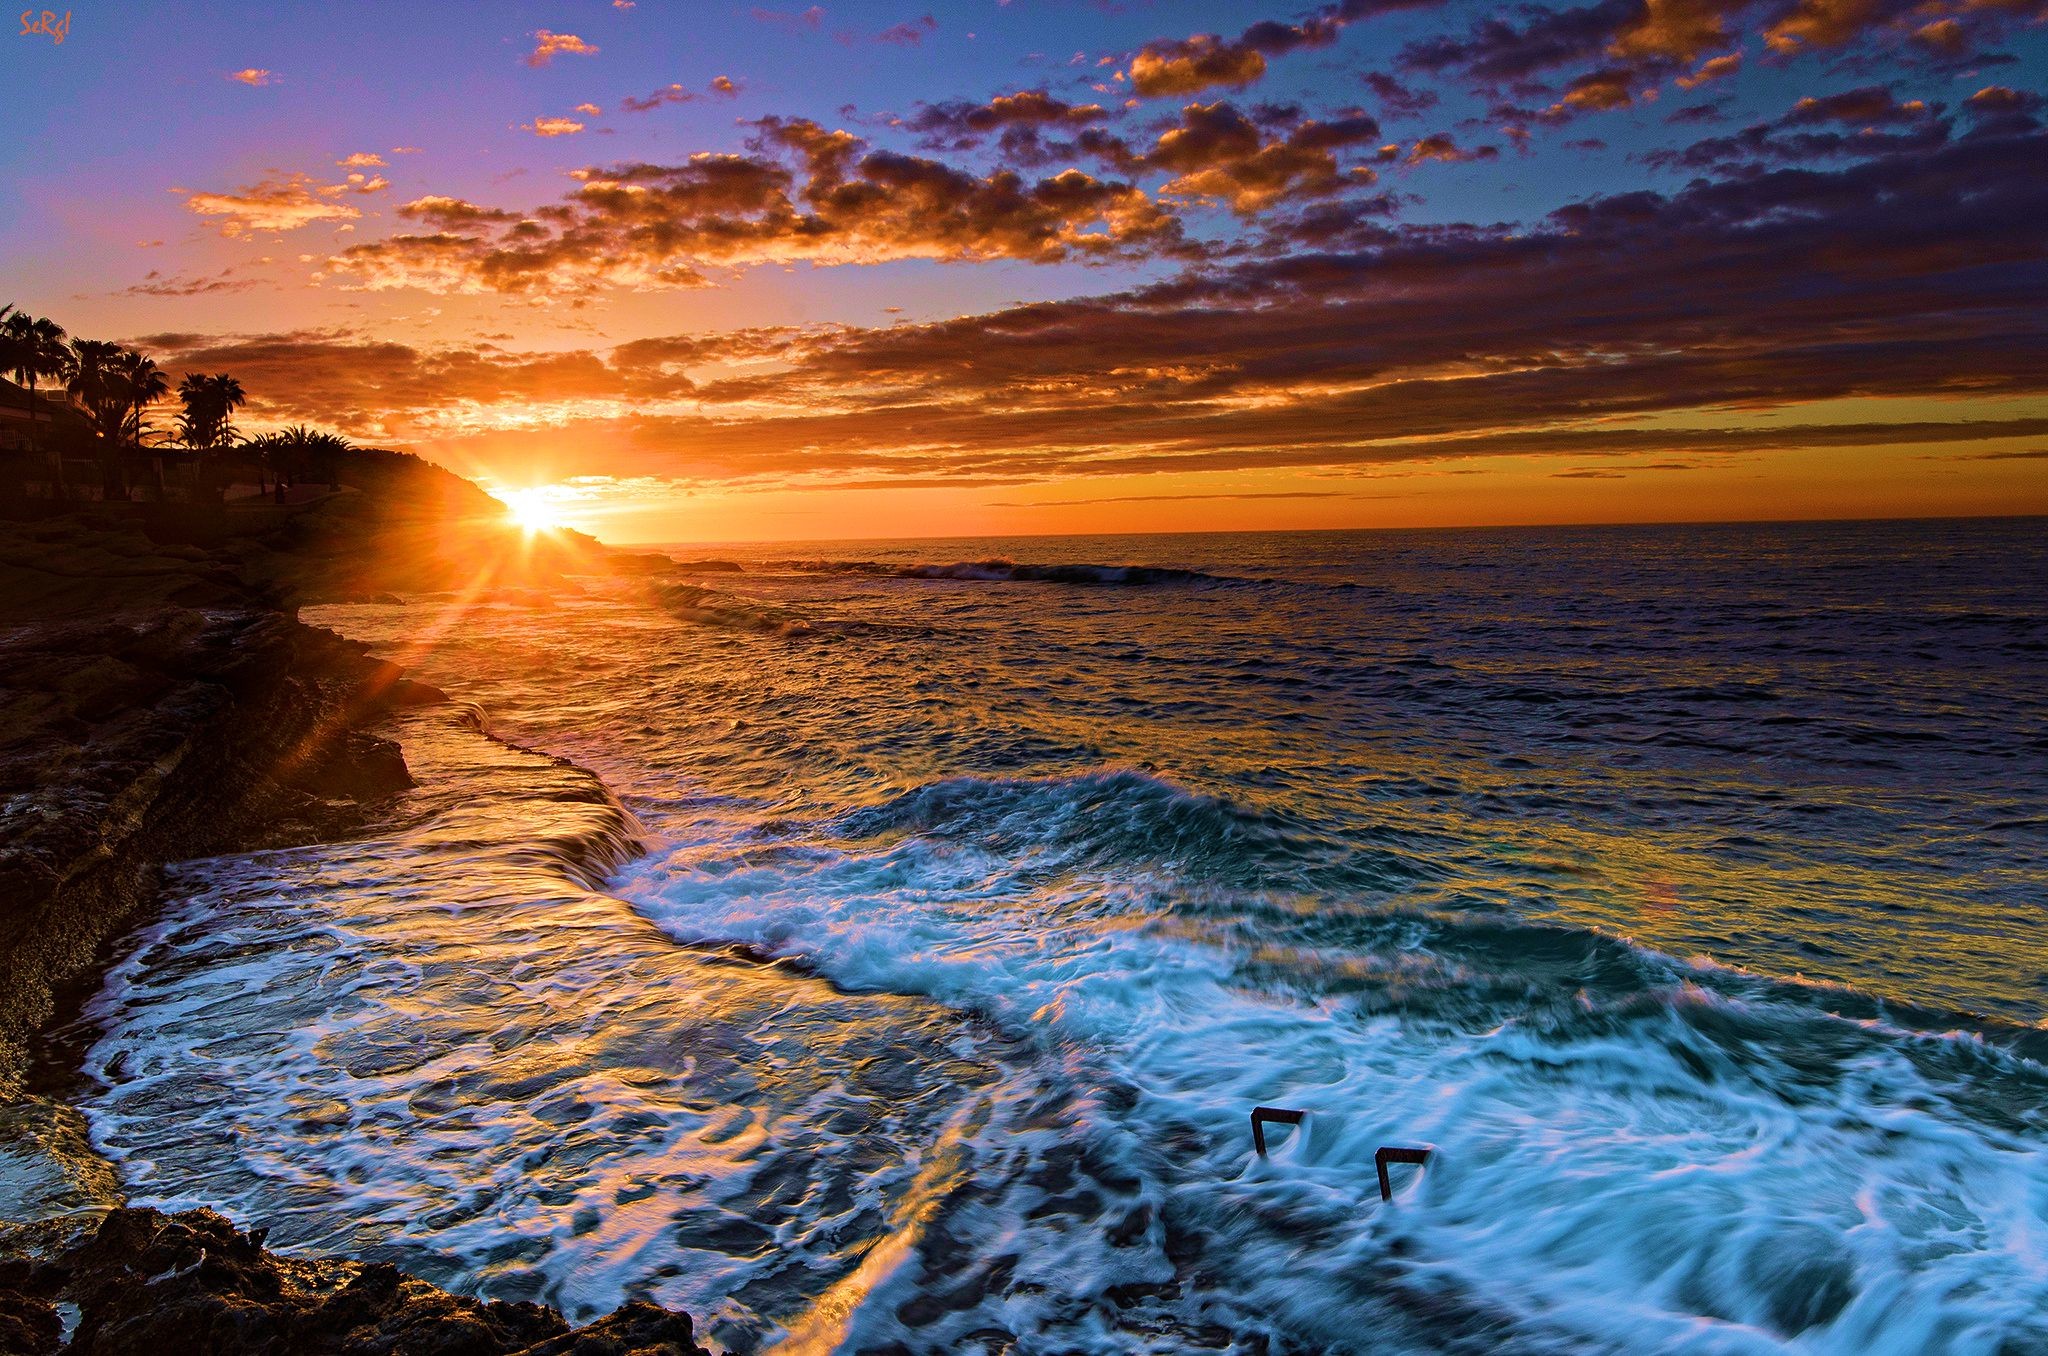 Beach Sunset Desktop Wallpaper (70+ images)